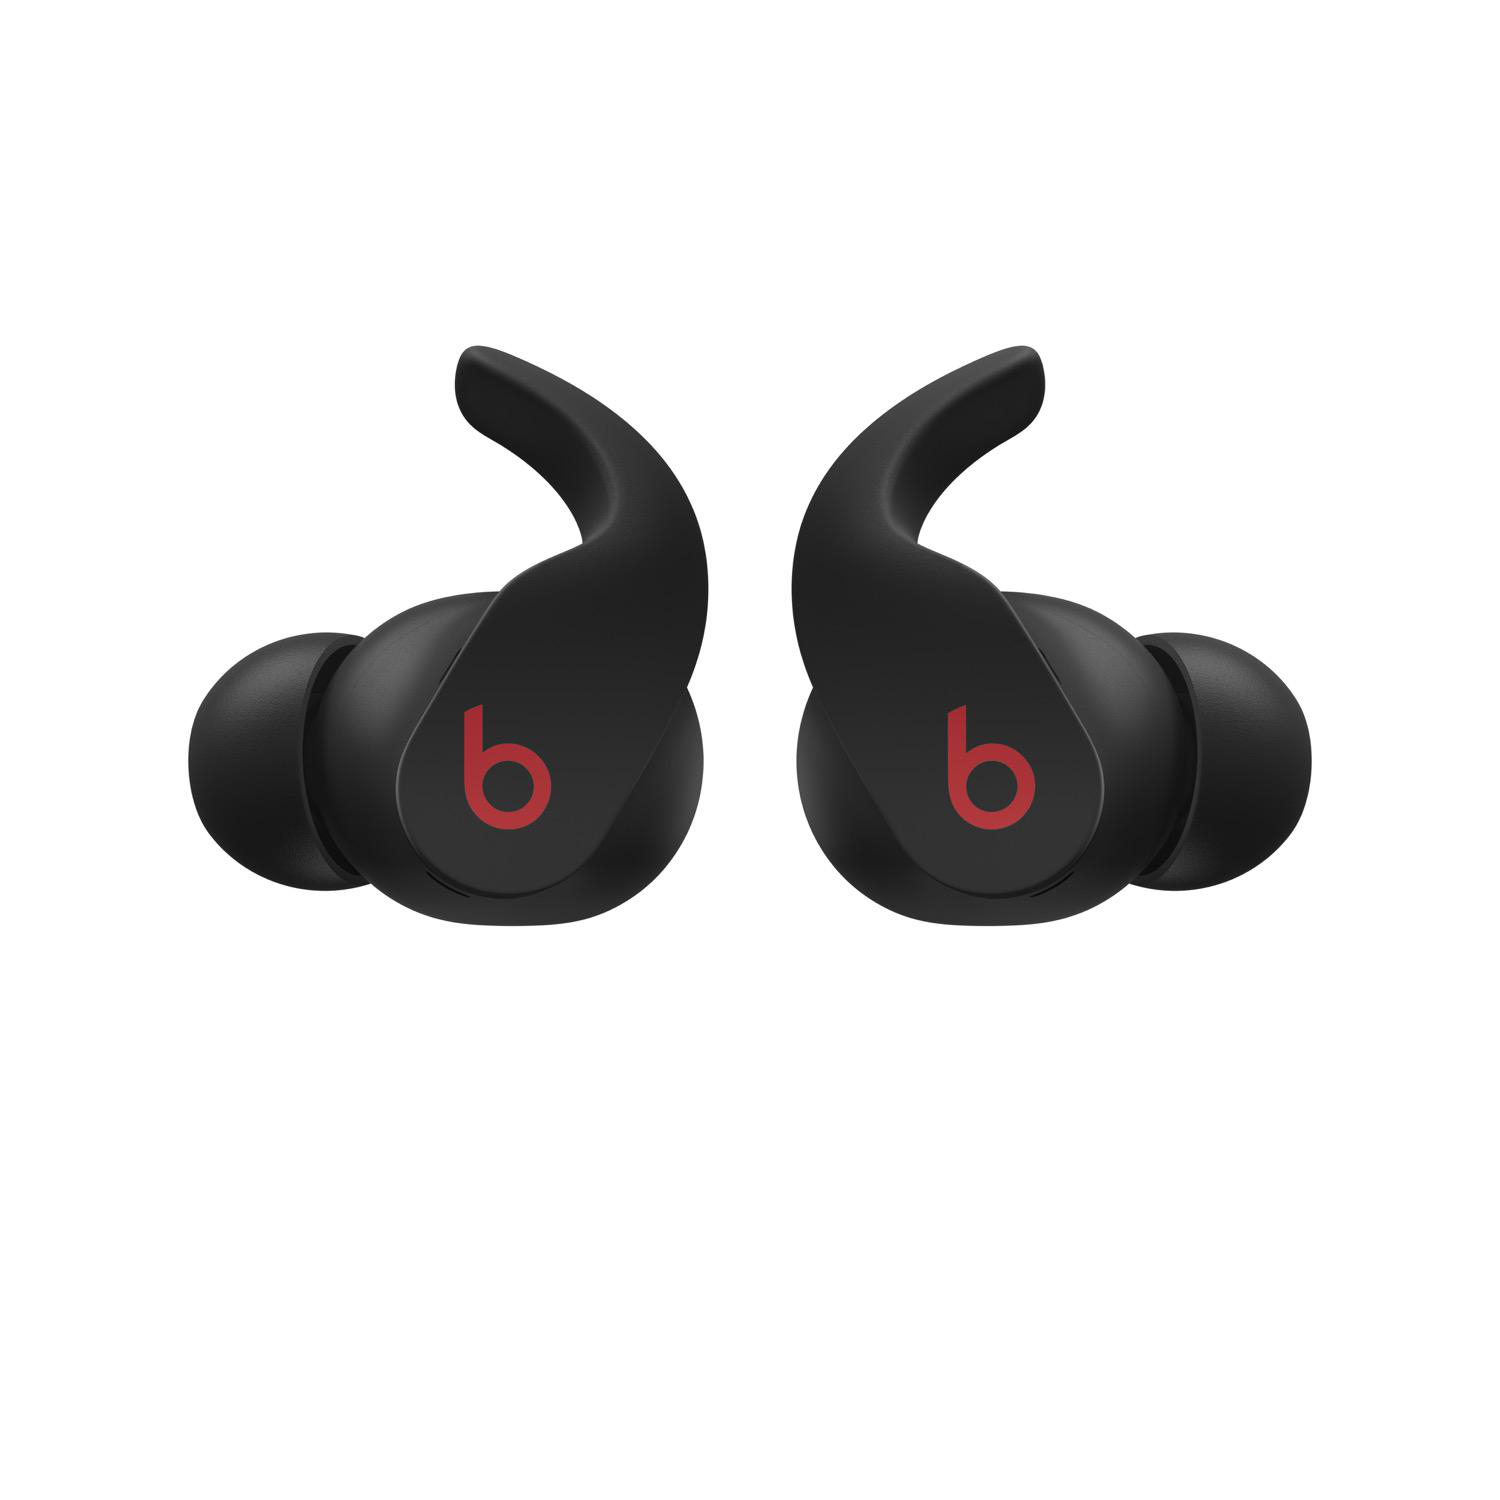 Wireless, Bluetooth Black Pro True Fit In-ear Kopfhörer BEATS